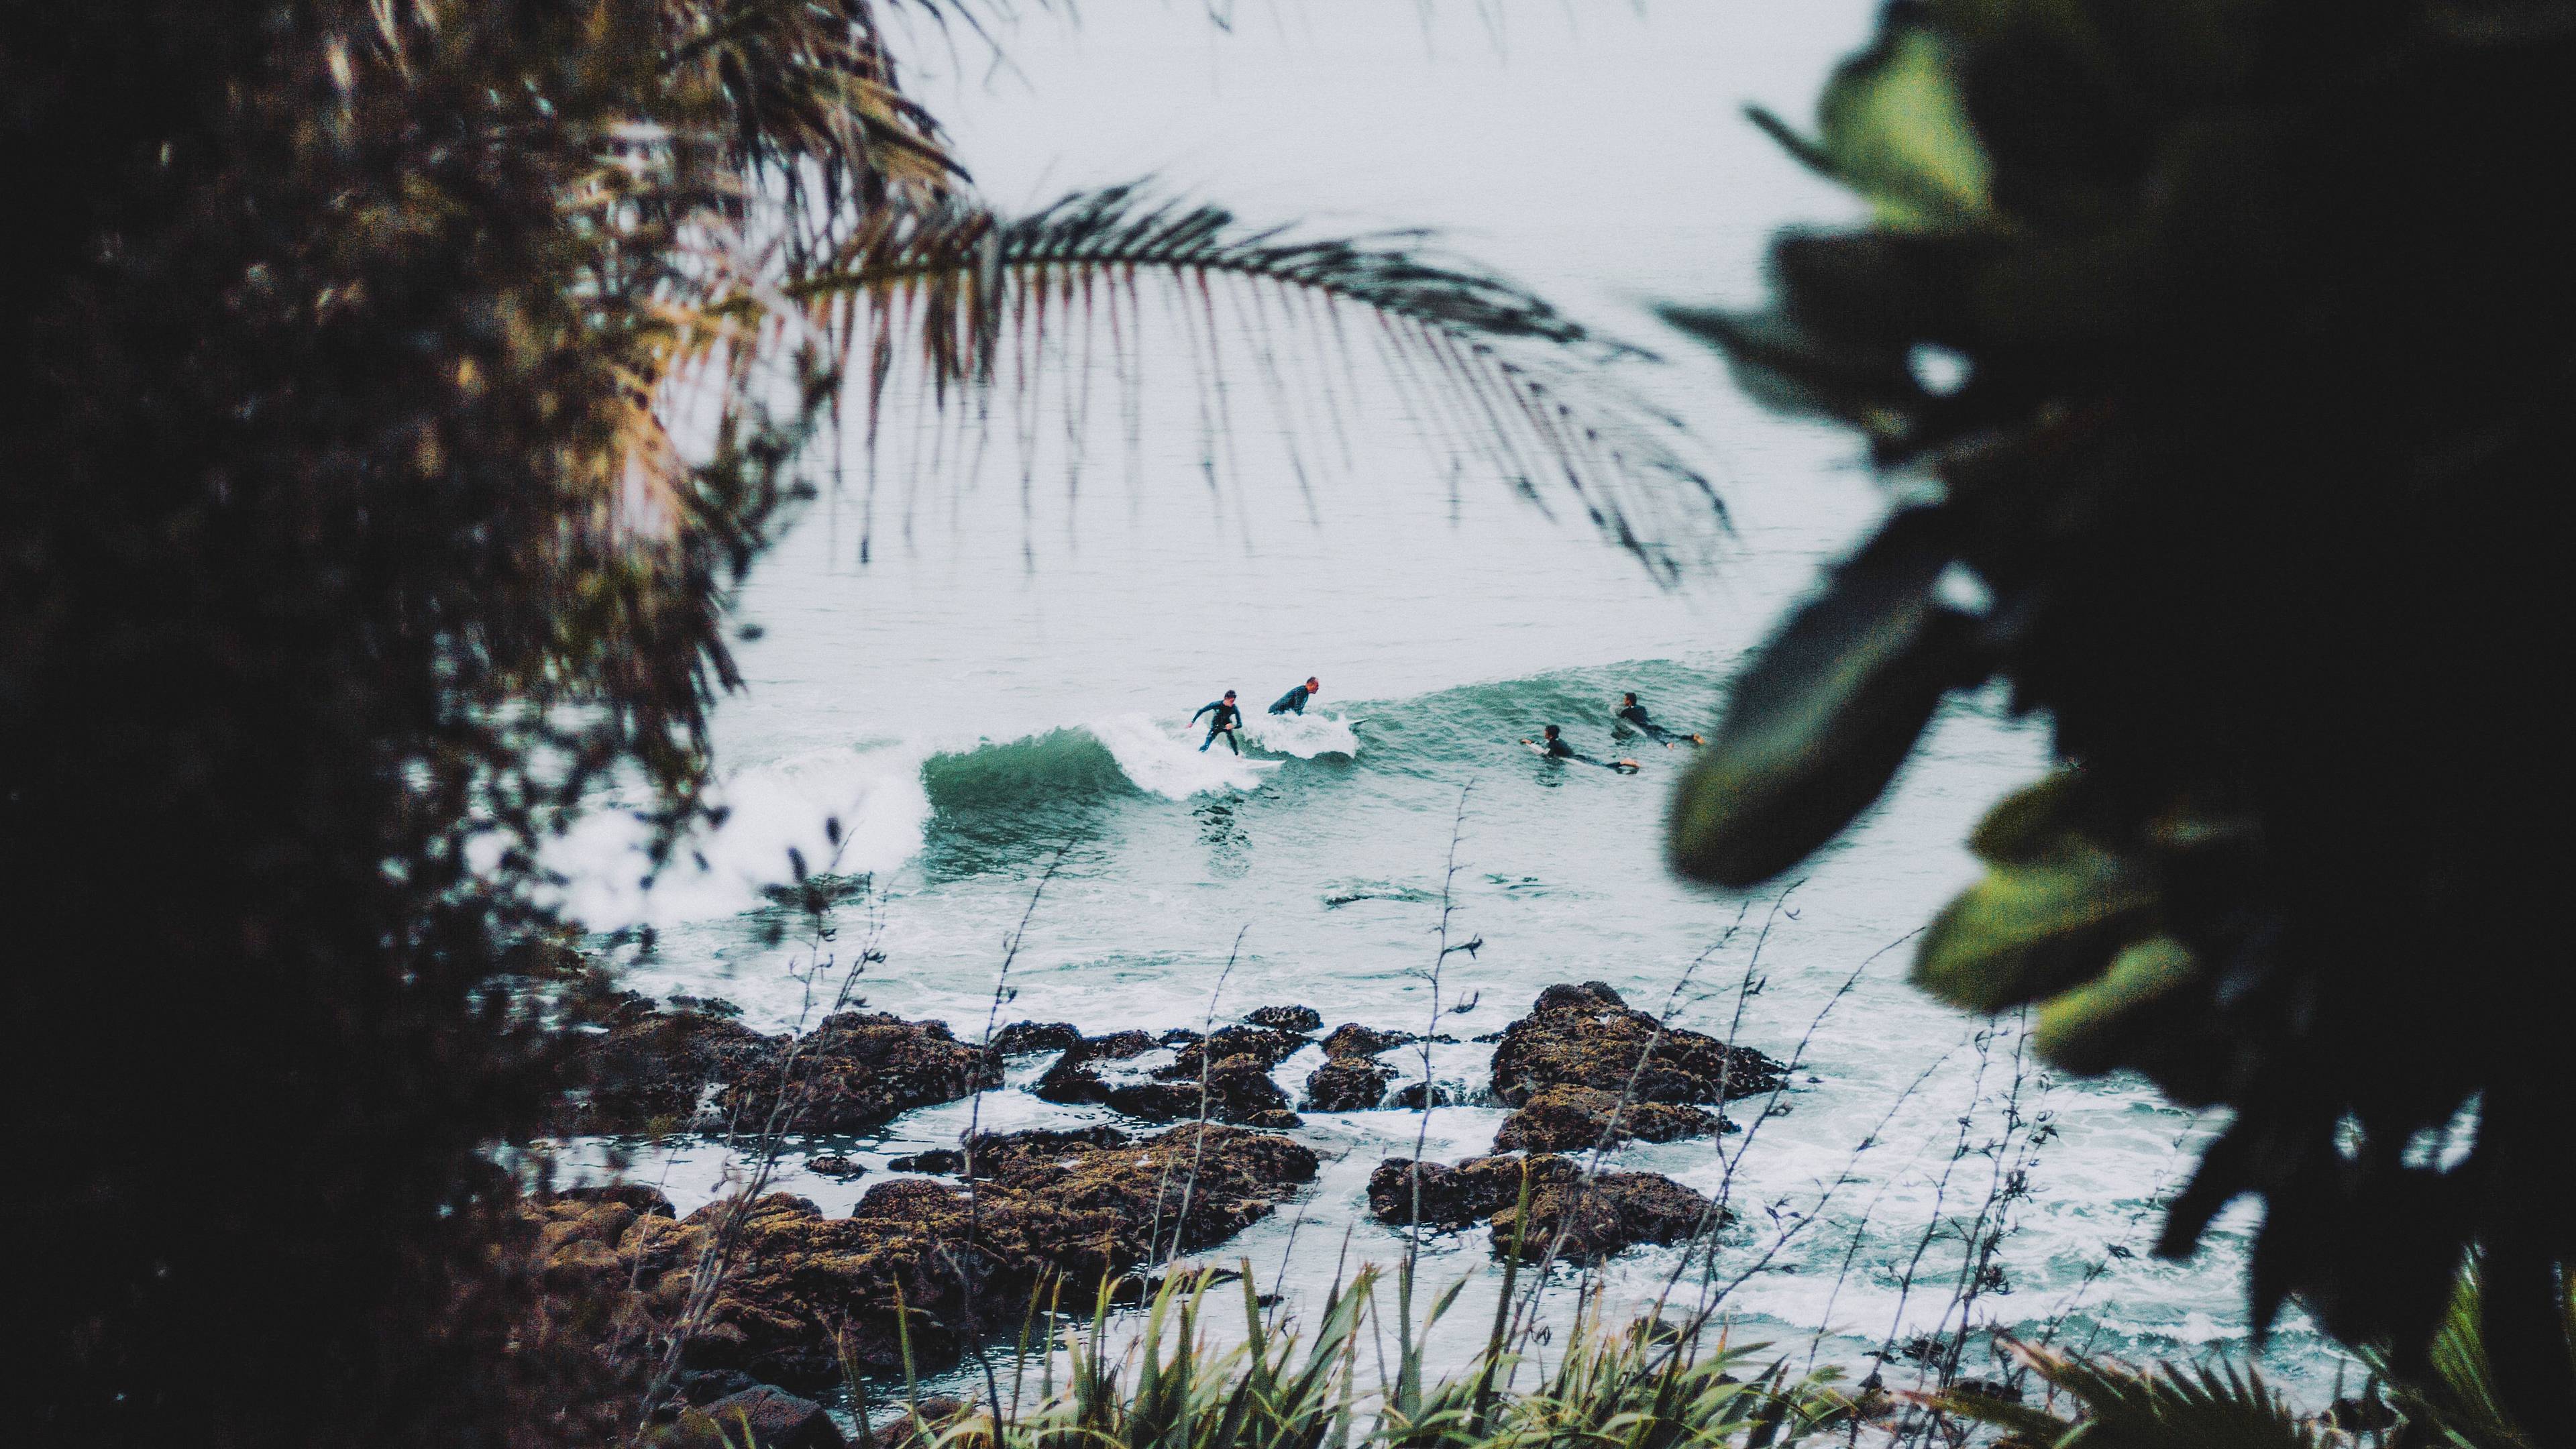 Australische Surfer durch die Vegetation gesehen